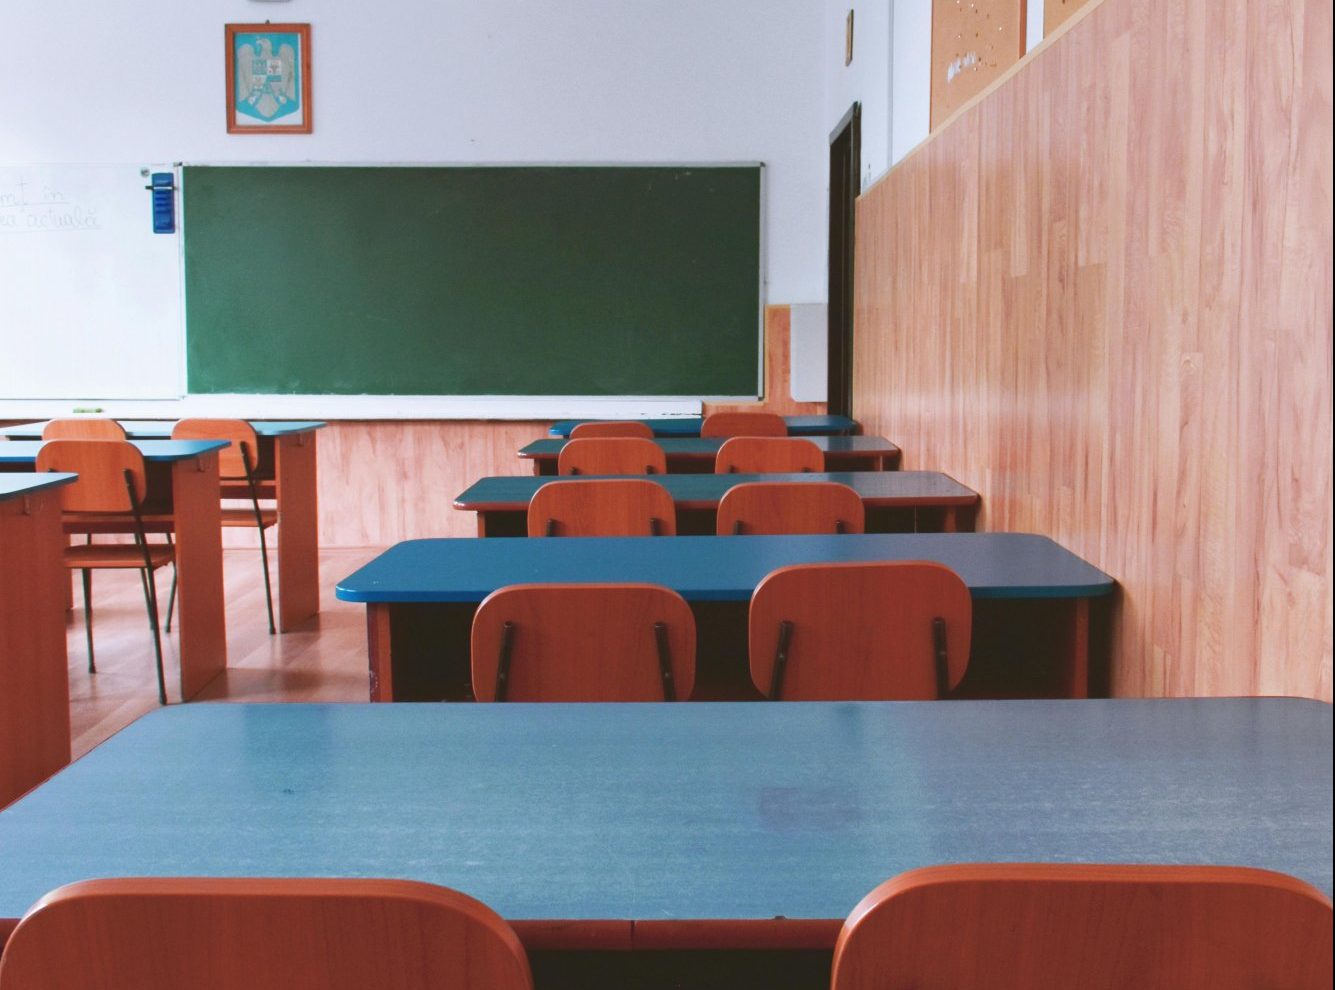 Χανιά: Ο καθηγητής που χειροδίκησε εναντίον μαθητών του ισχυρίζεται ότι ήταν «αστεϊσμοί»